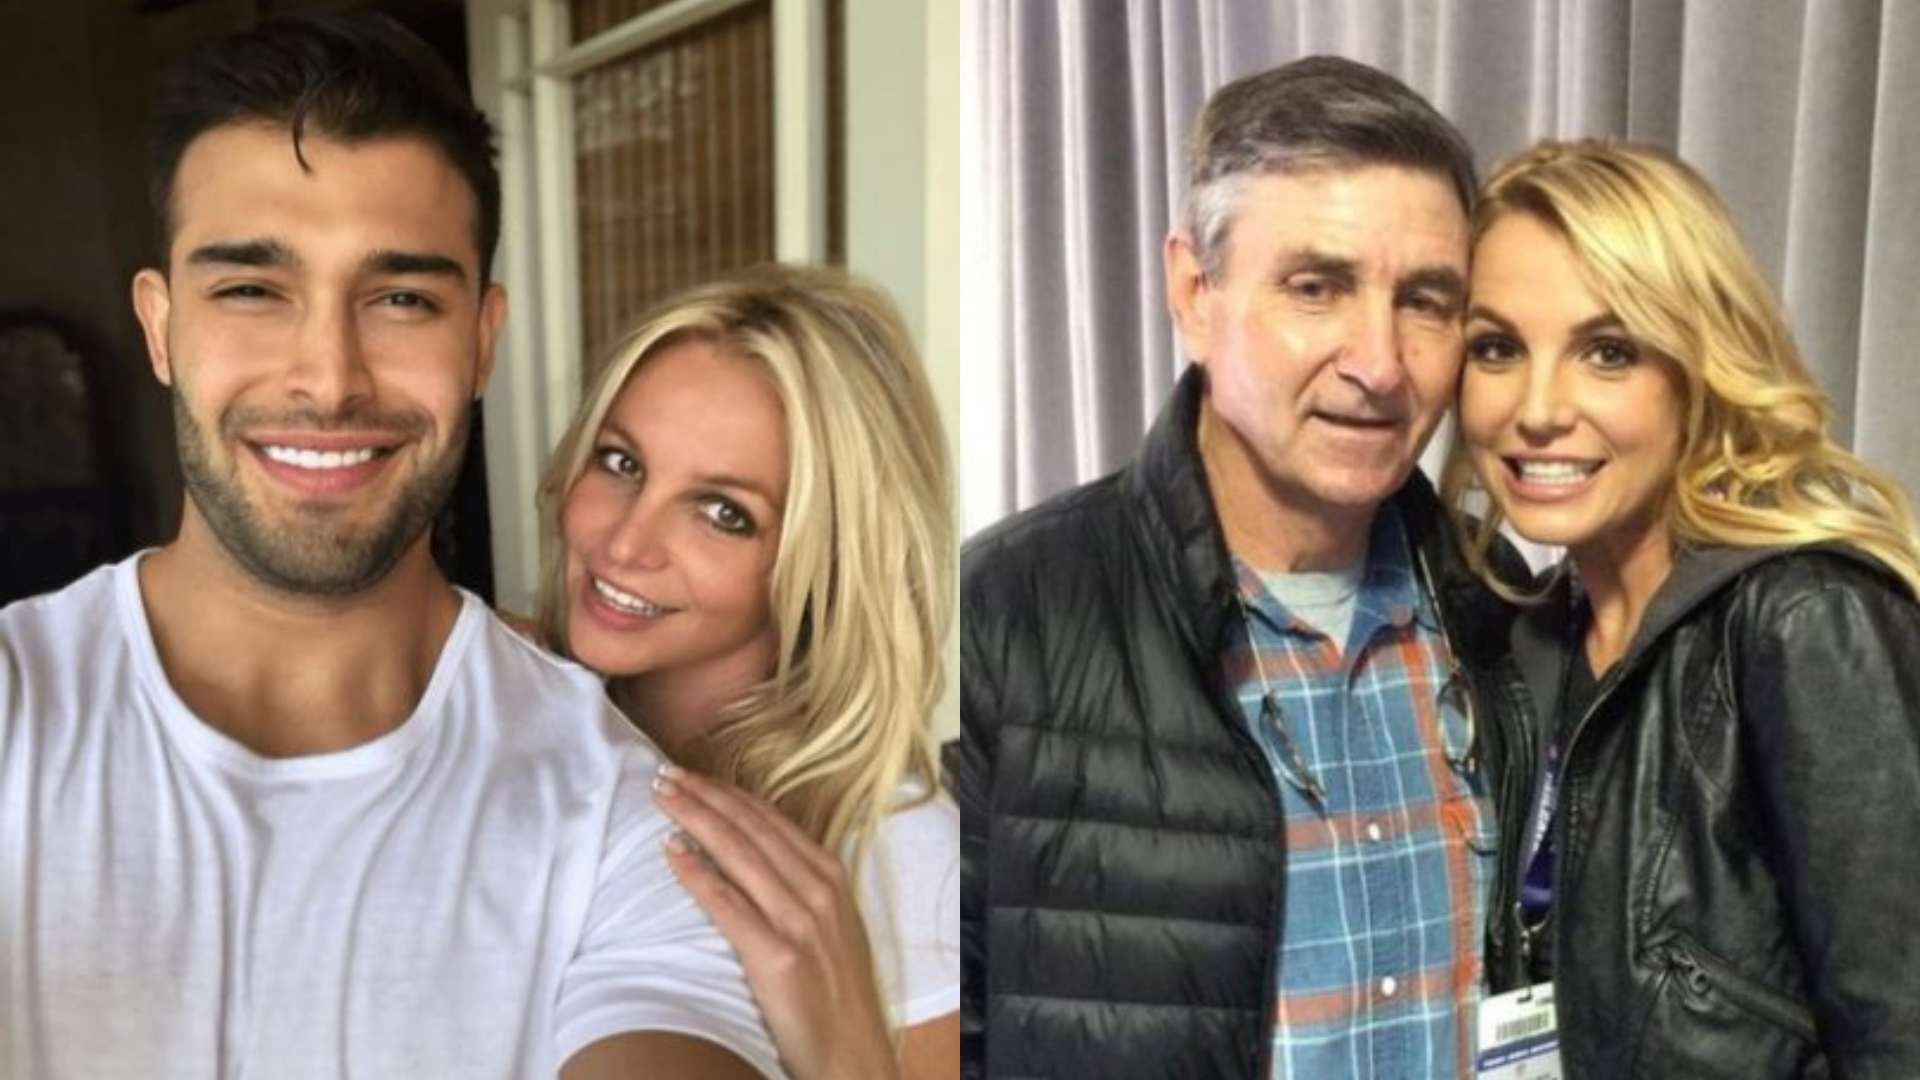 Britney Spears estaria desconfiada de ligação secreta entre ex-marido e o pai, diz jornal